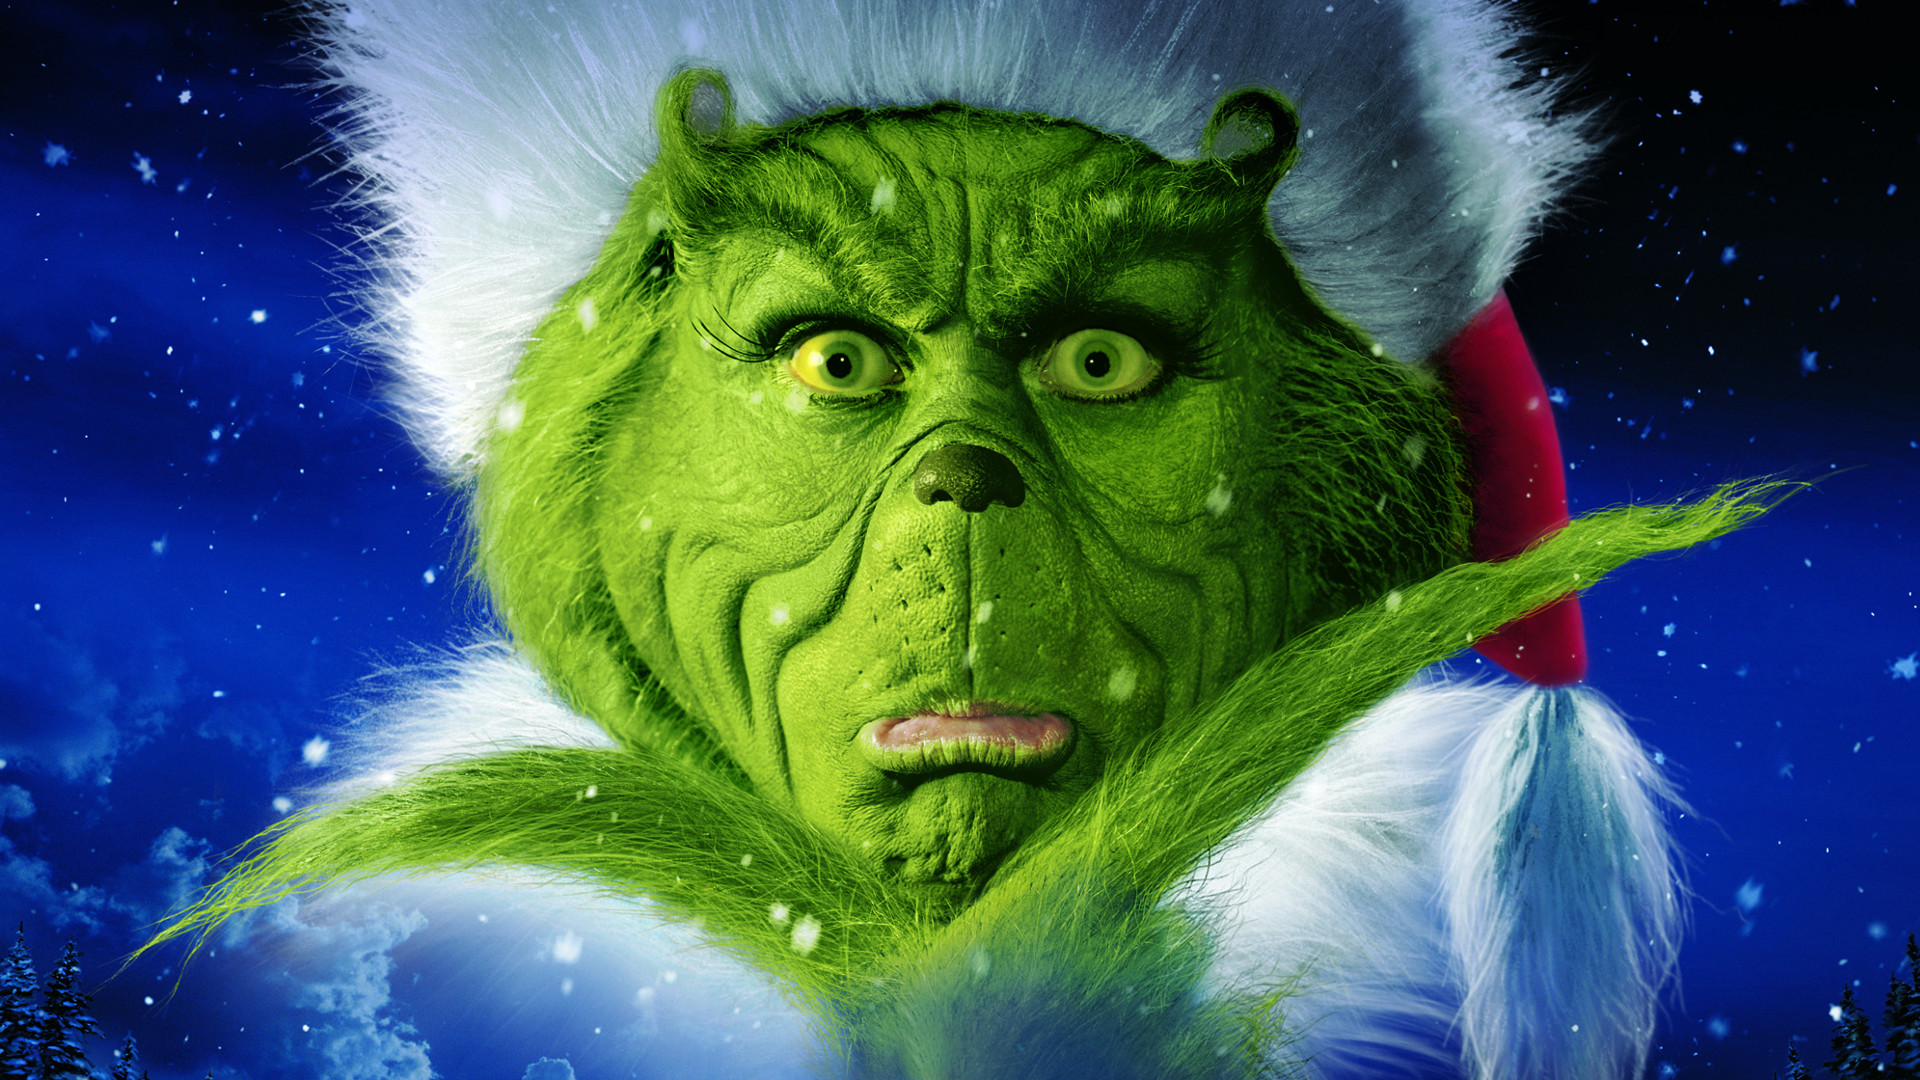 Hình nền máy tính HD với chủ đề How The Grinch Stole Christmas sẽ khiến bạn đắm chìm trong thế giới phim ảnh đầy sắc màu và nghệ thuật. Hãy cùng đón nhận những hình ảnh đẹp nhất của Grinch trên màn hình máy tính của bạn.